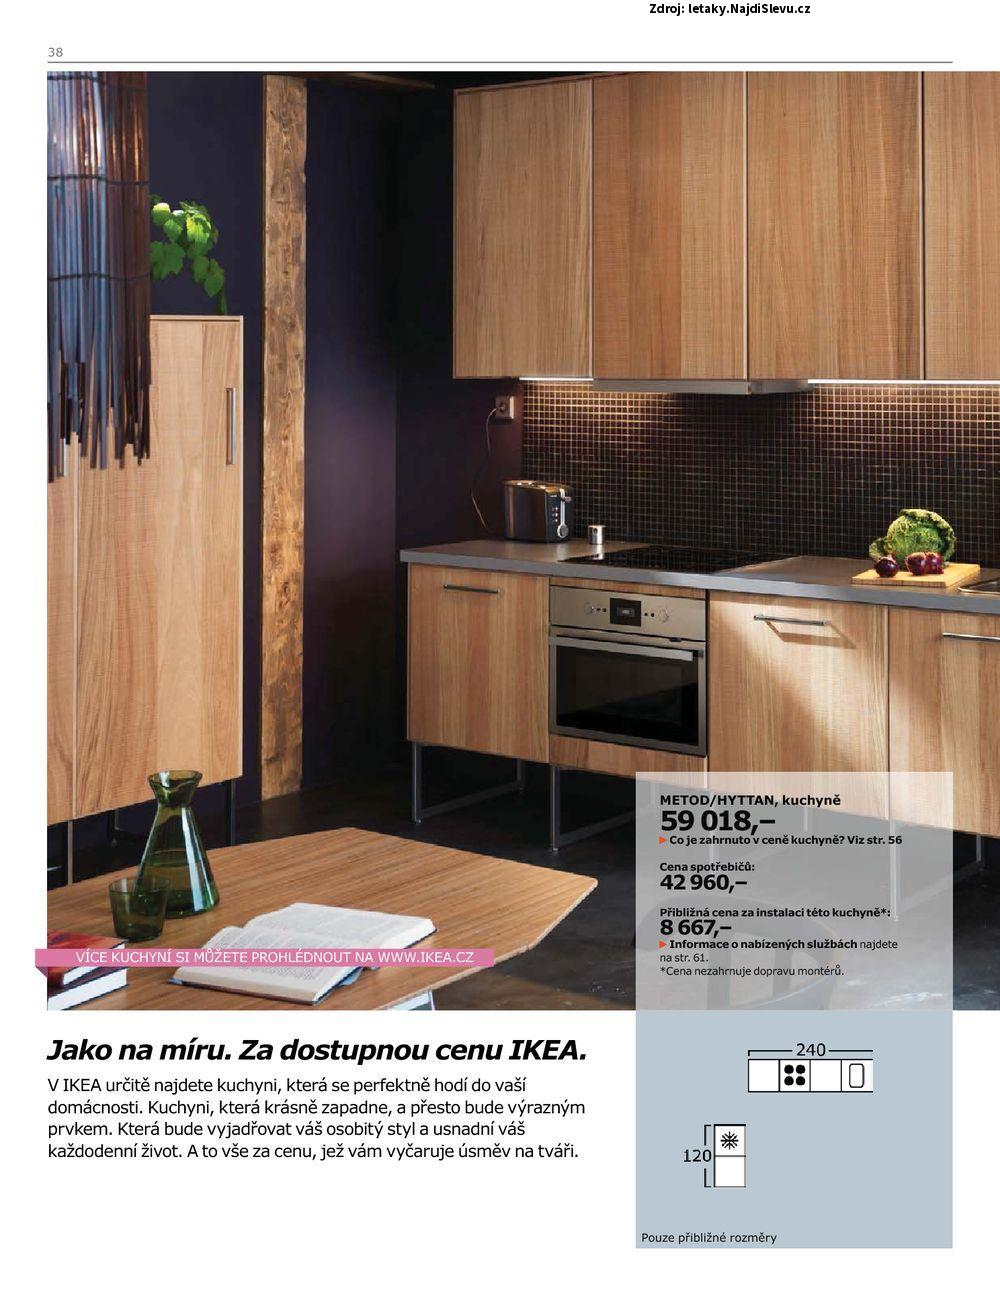 Strana 38 - letk IKEA (do 31. 7. 2016)